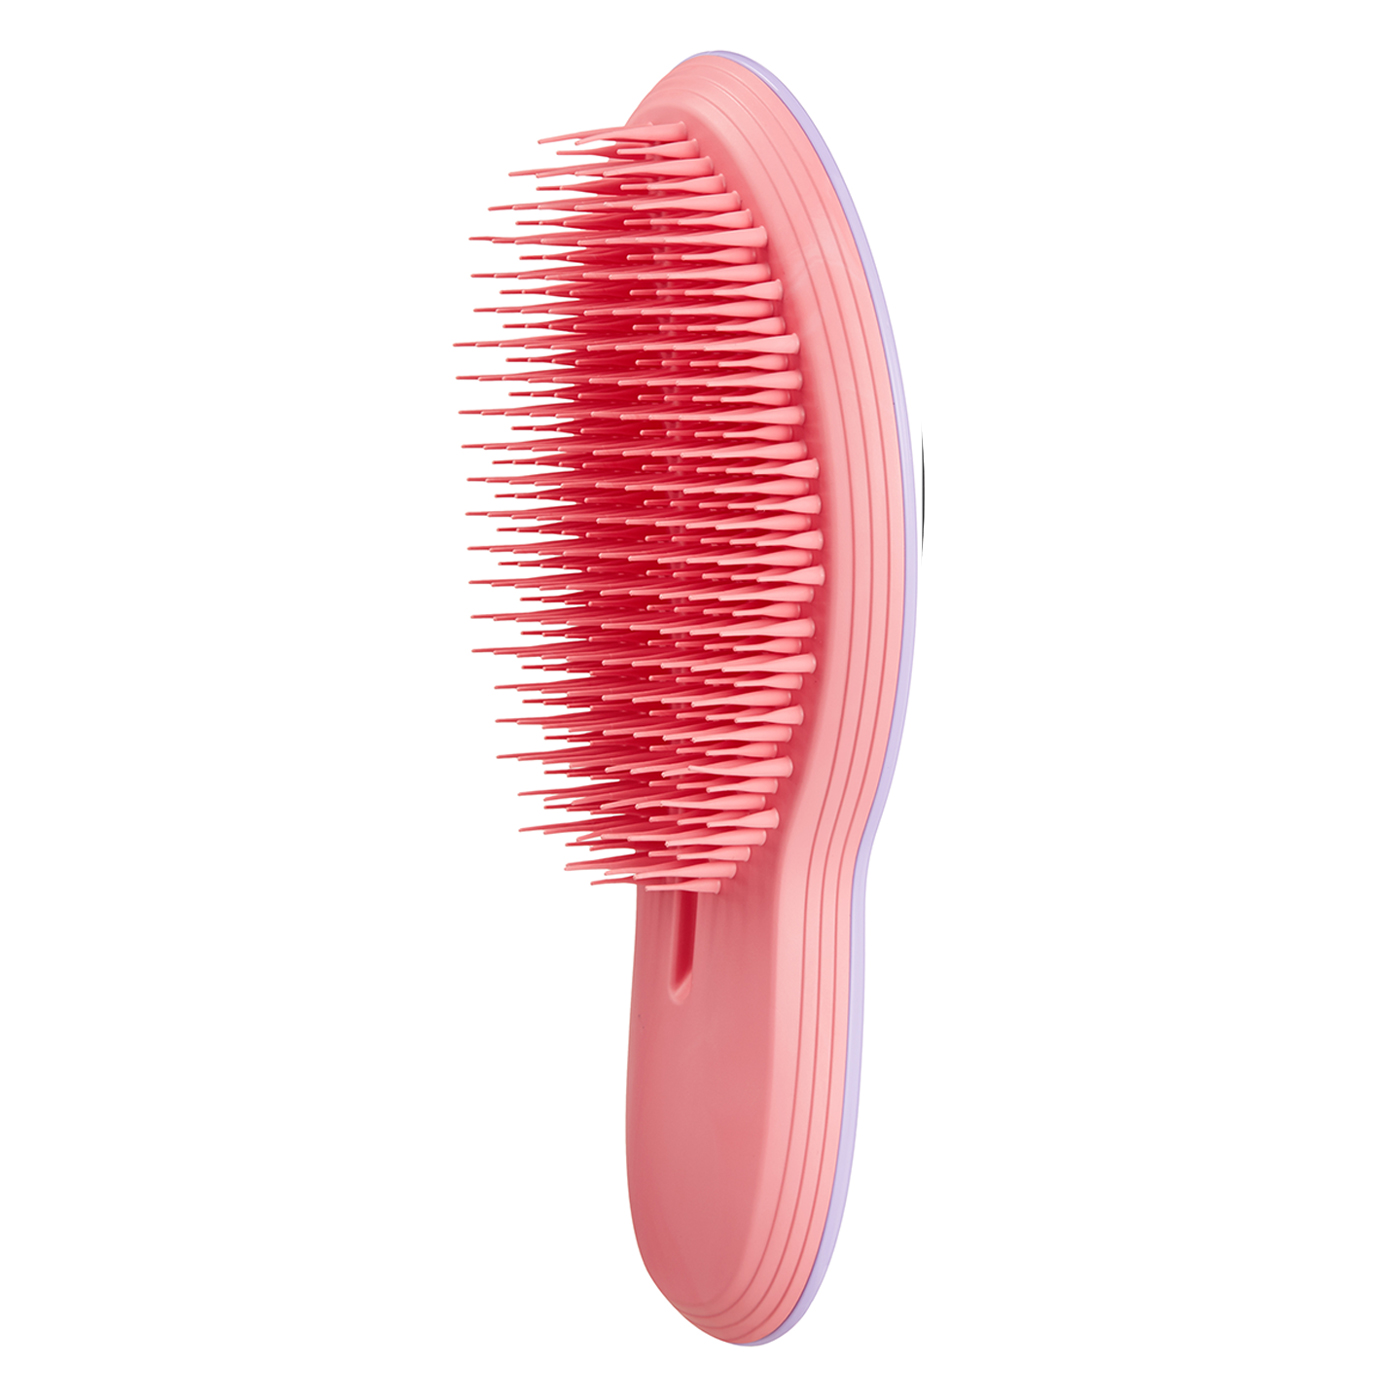  Tangle Teezer The Ultimate Saç Fırçası | Lilac Coral